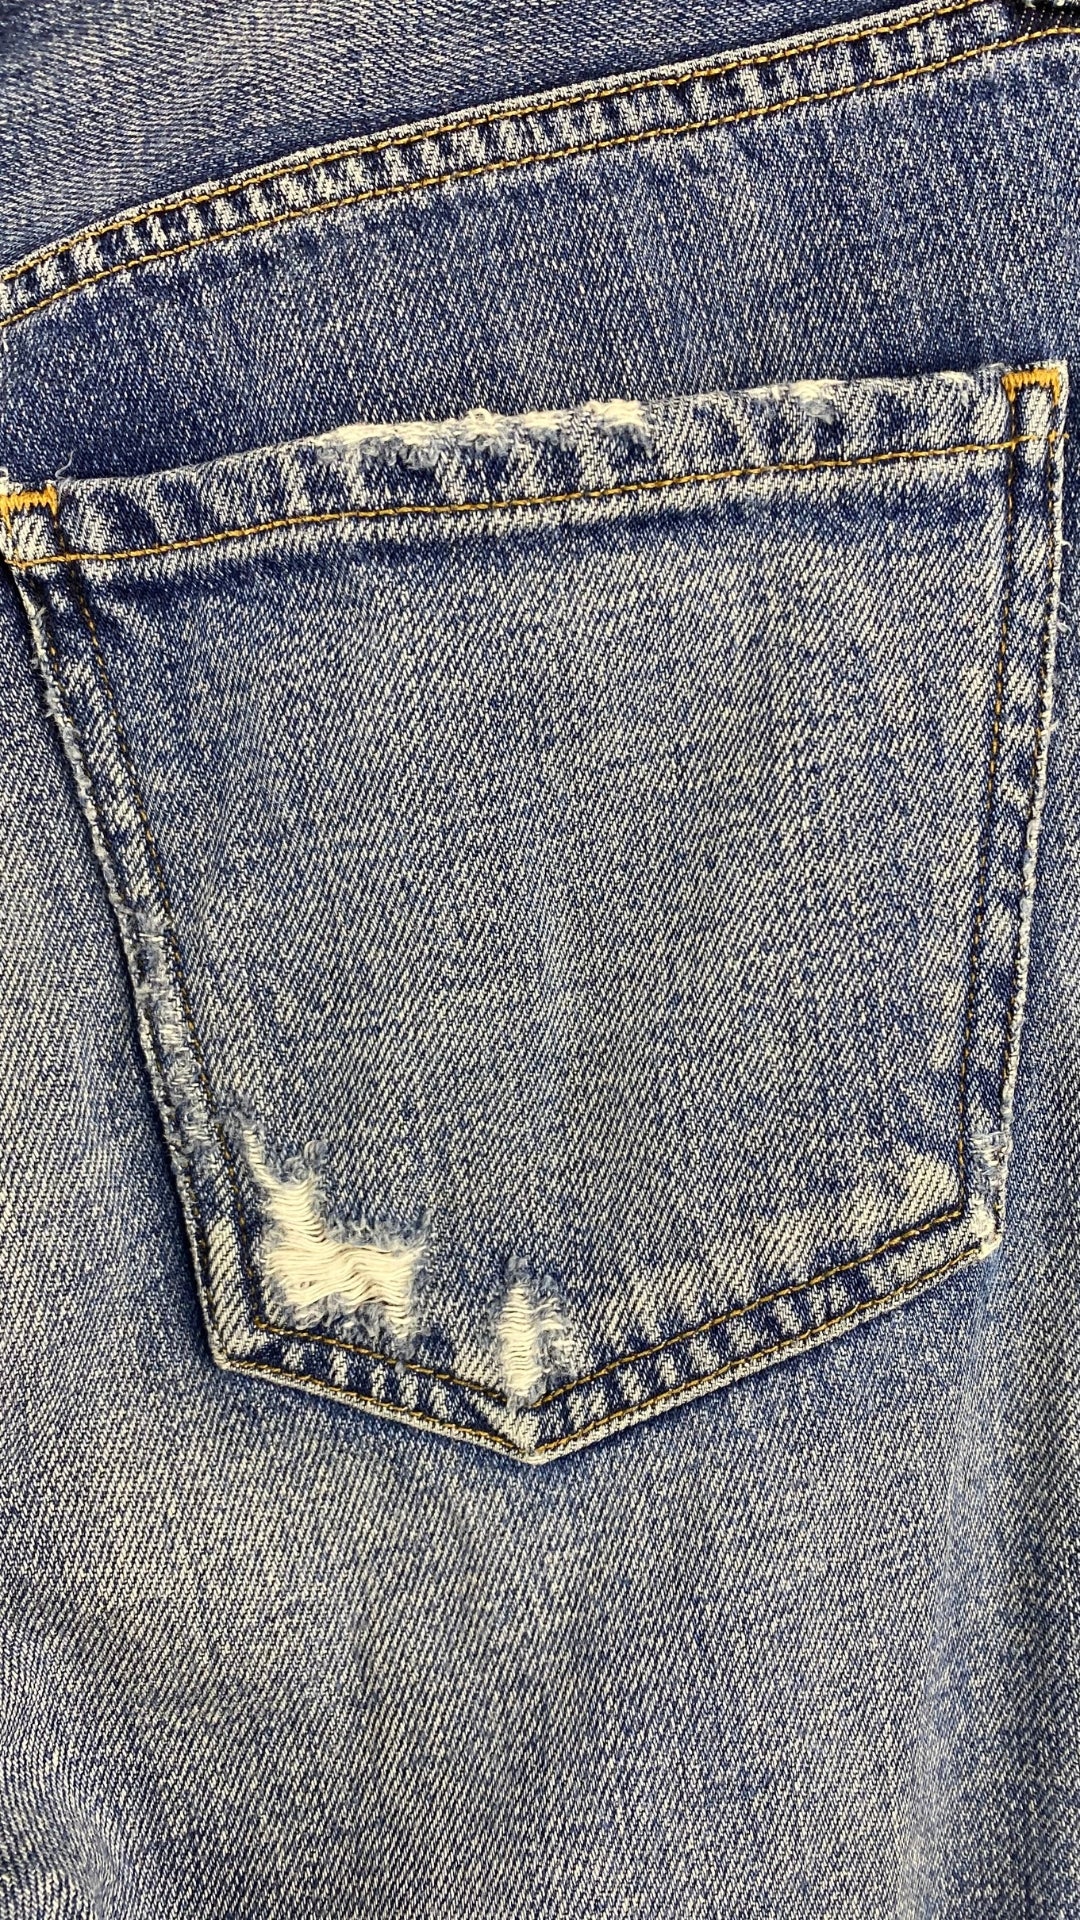 Jeans ajusté taille haute Citizens of Humanity, taille 23. Vue de l'autre poche arrière.